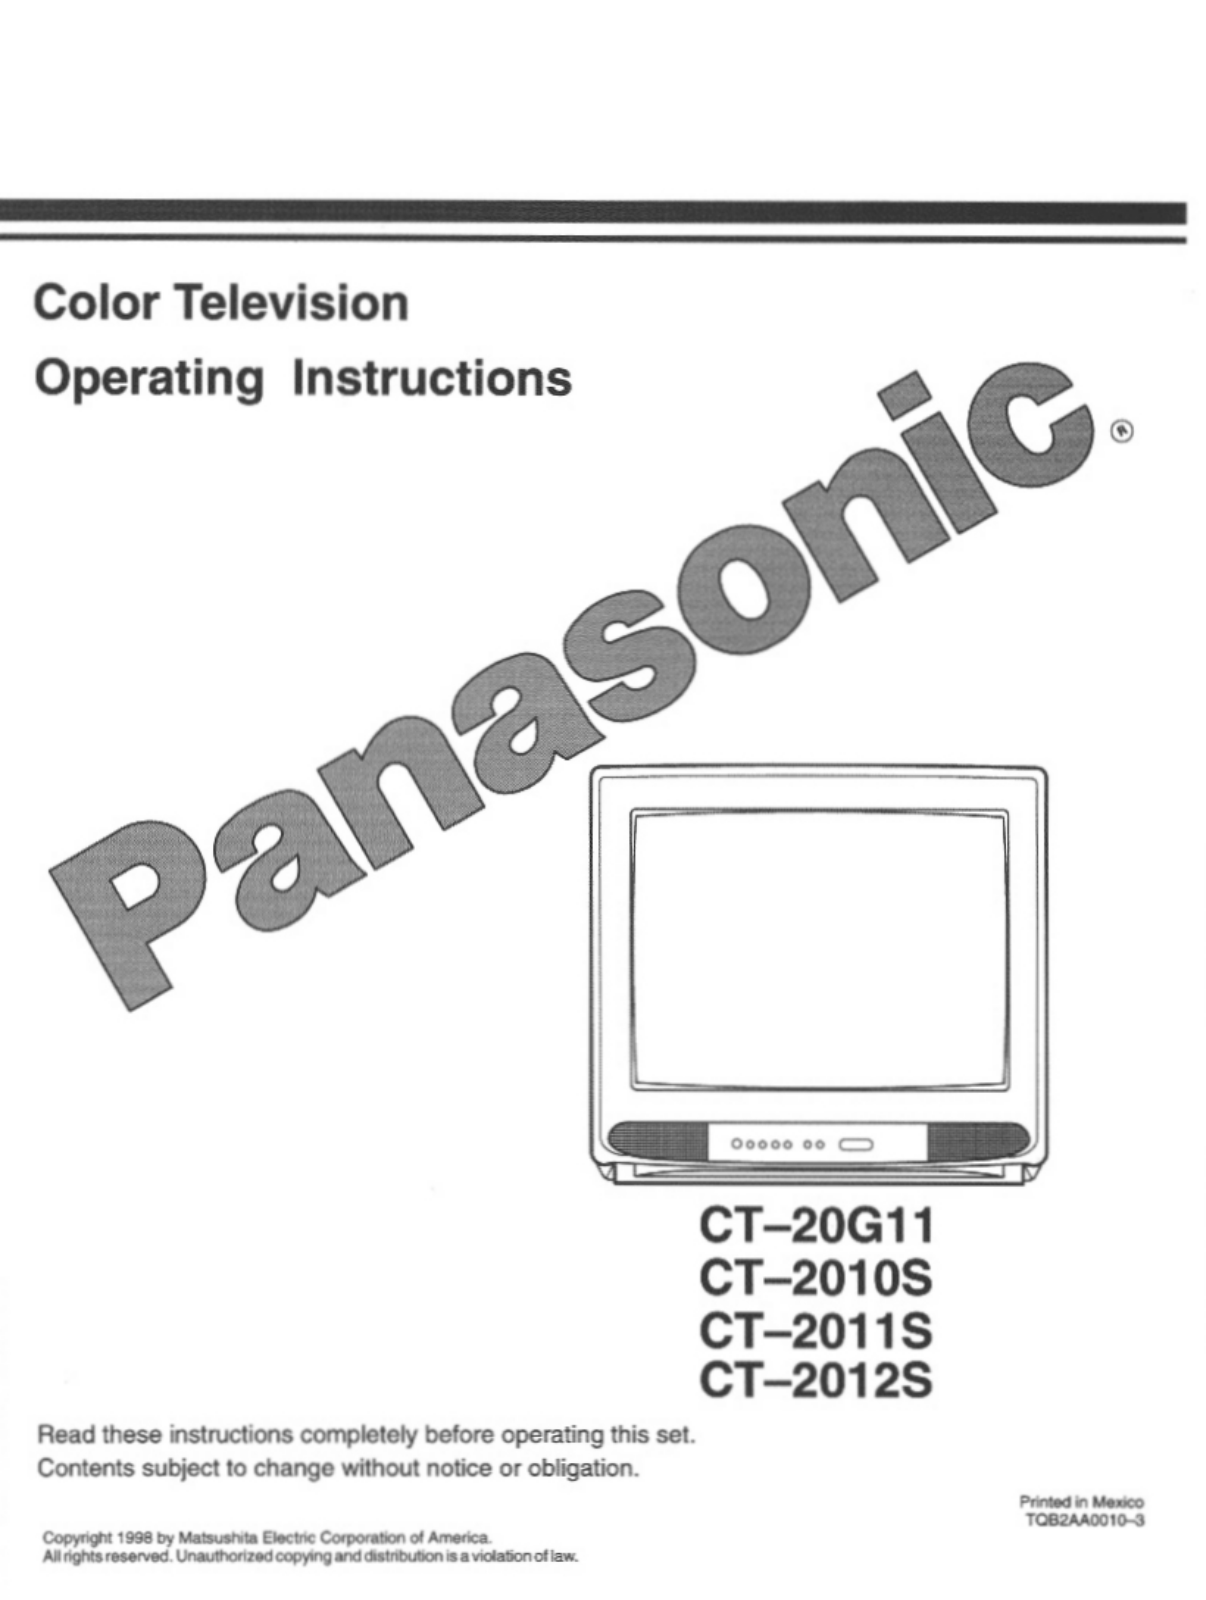 Panasonic CT-2011S, CT-2011SV, CT-2010SV, CT-2012S, CT-20G11 User Manual